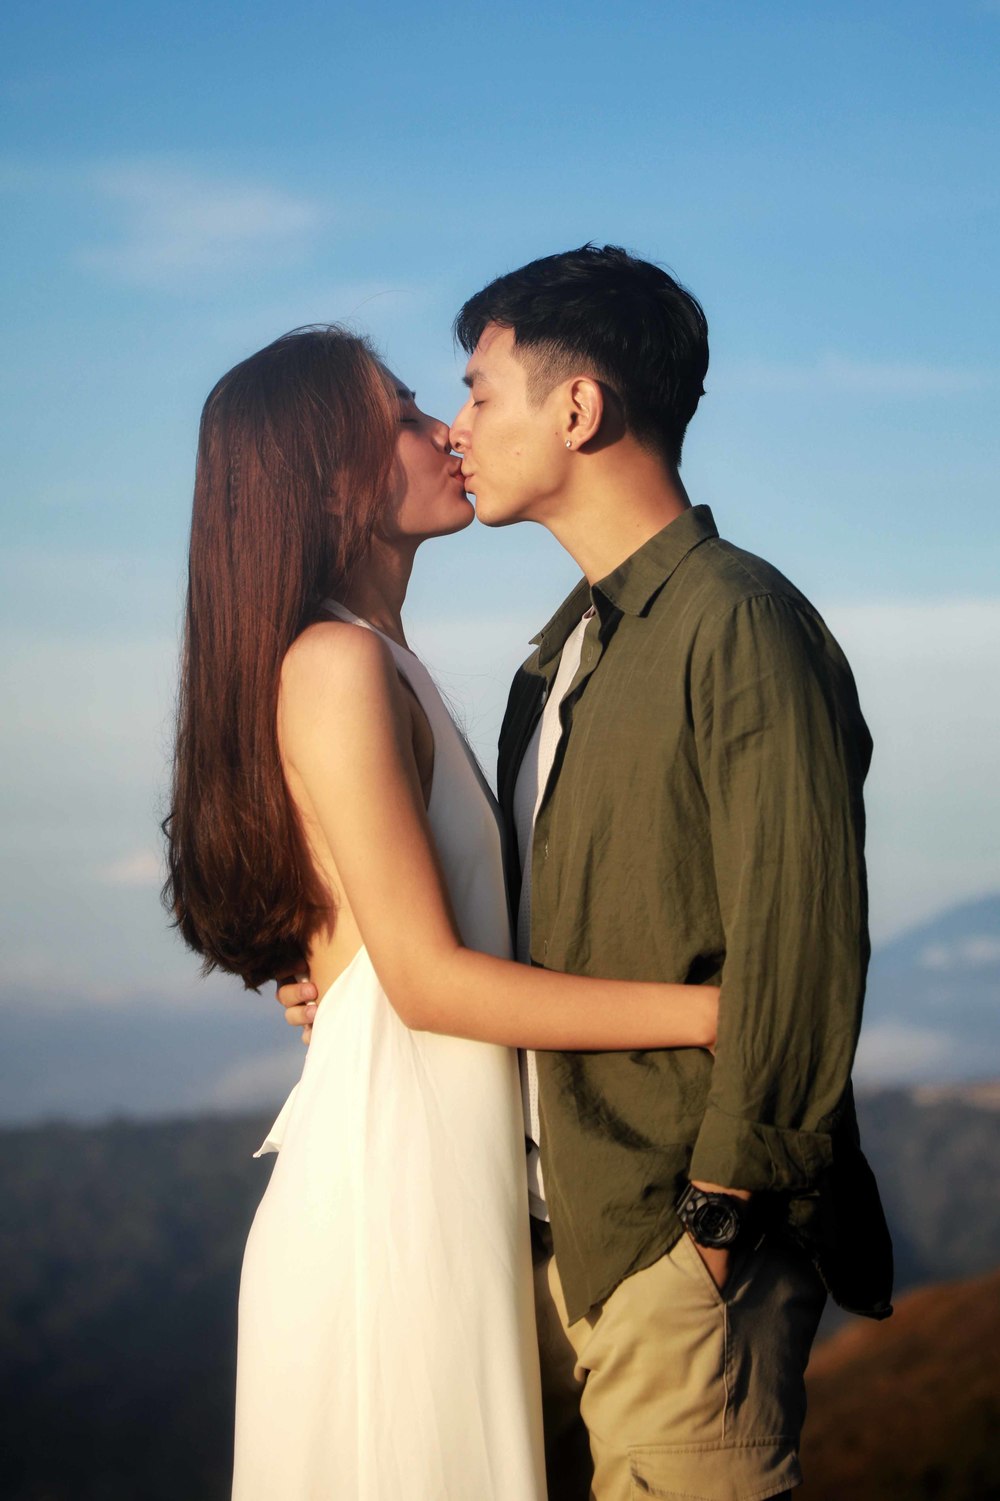 Chúng Huyền Thanh và Jay Quân hôn nhau ngọt ngào trên đảo Bali - Tin sao Viet - Tin tuc sao Viet - Scandal sao Viet - Tin tuc cua Sao - Tin cua Sao